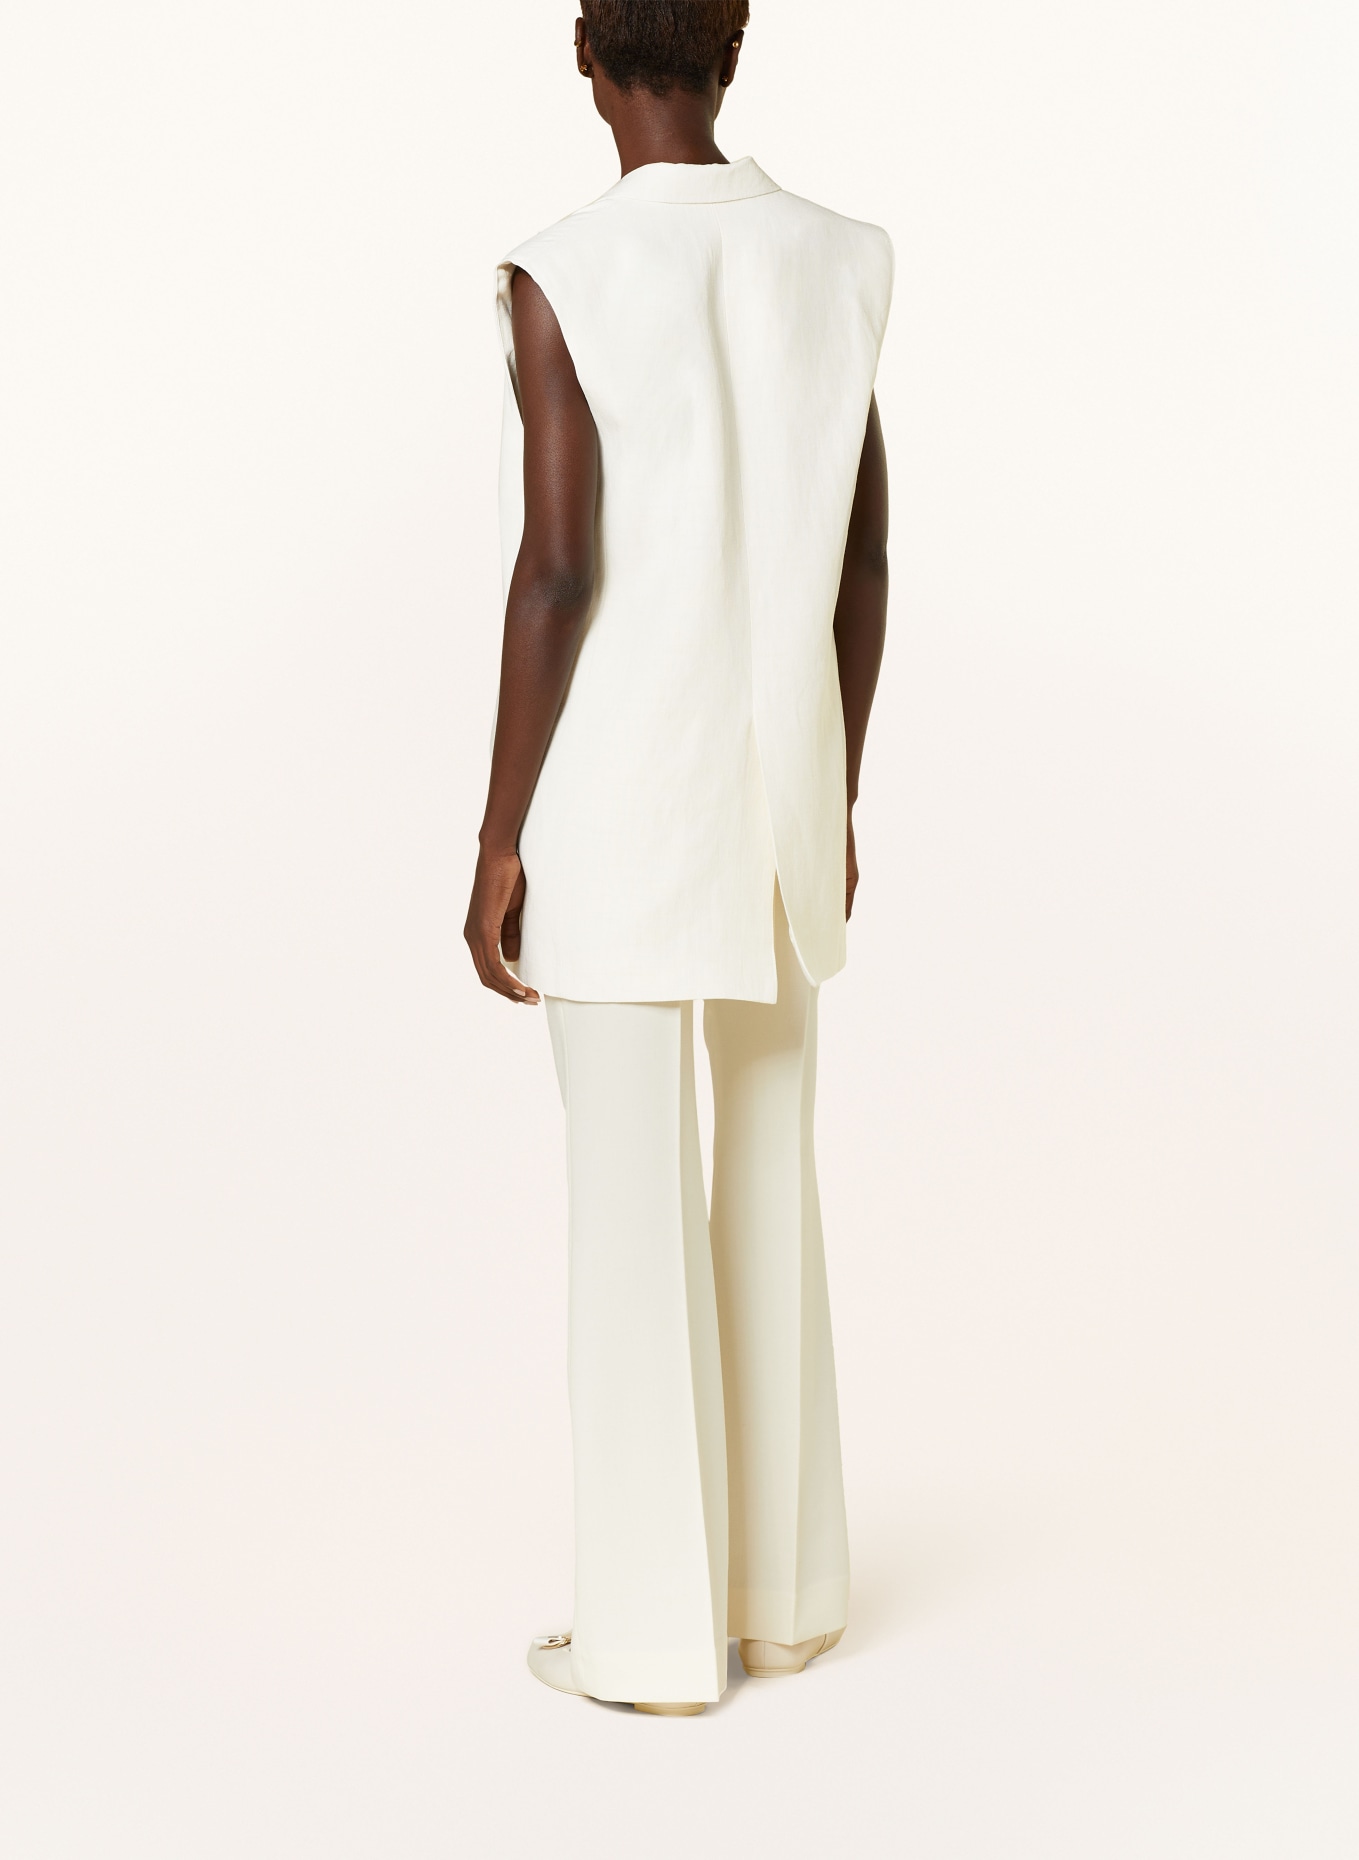 FABIANA FILIPPI Blazer vest with linen, Color: CREAM (Image 3)